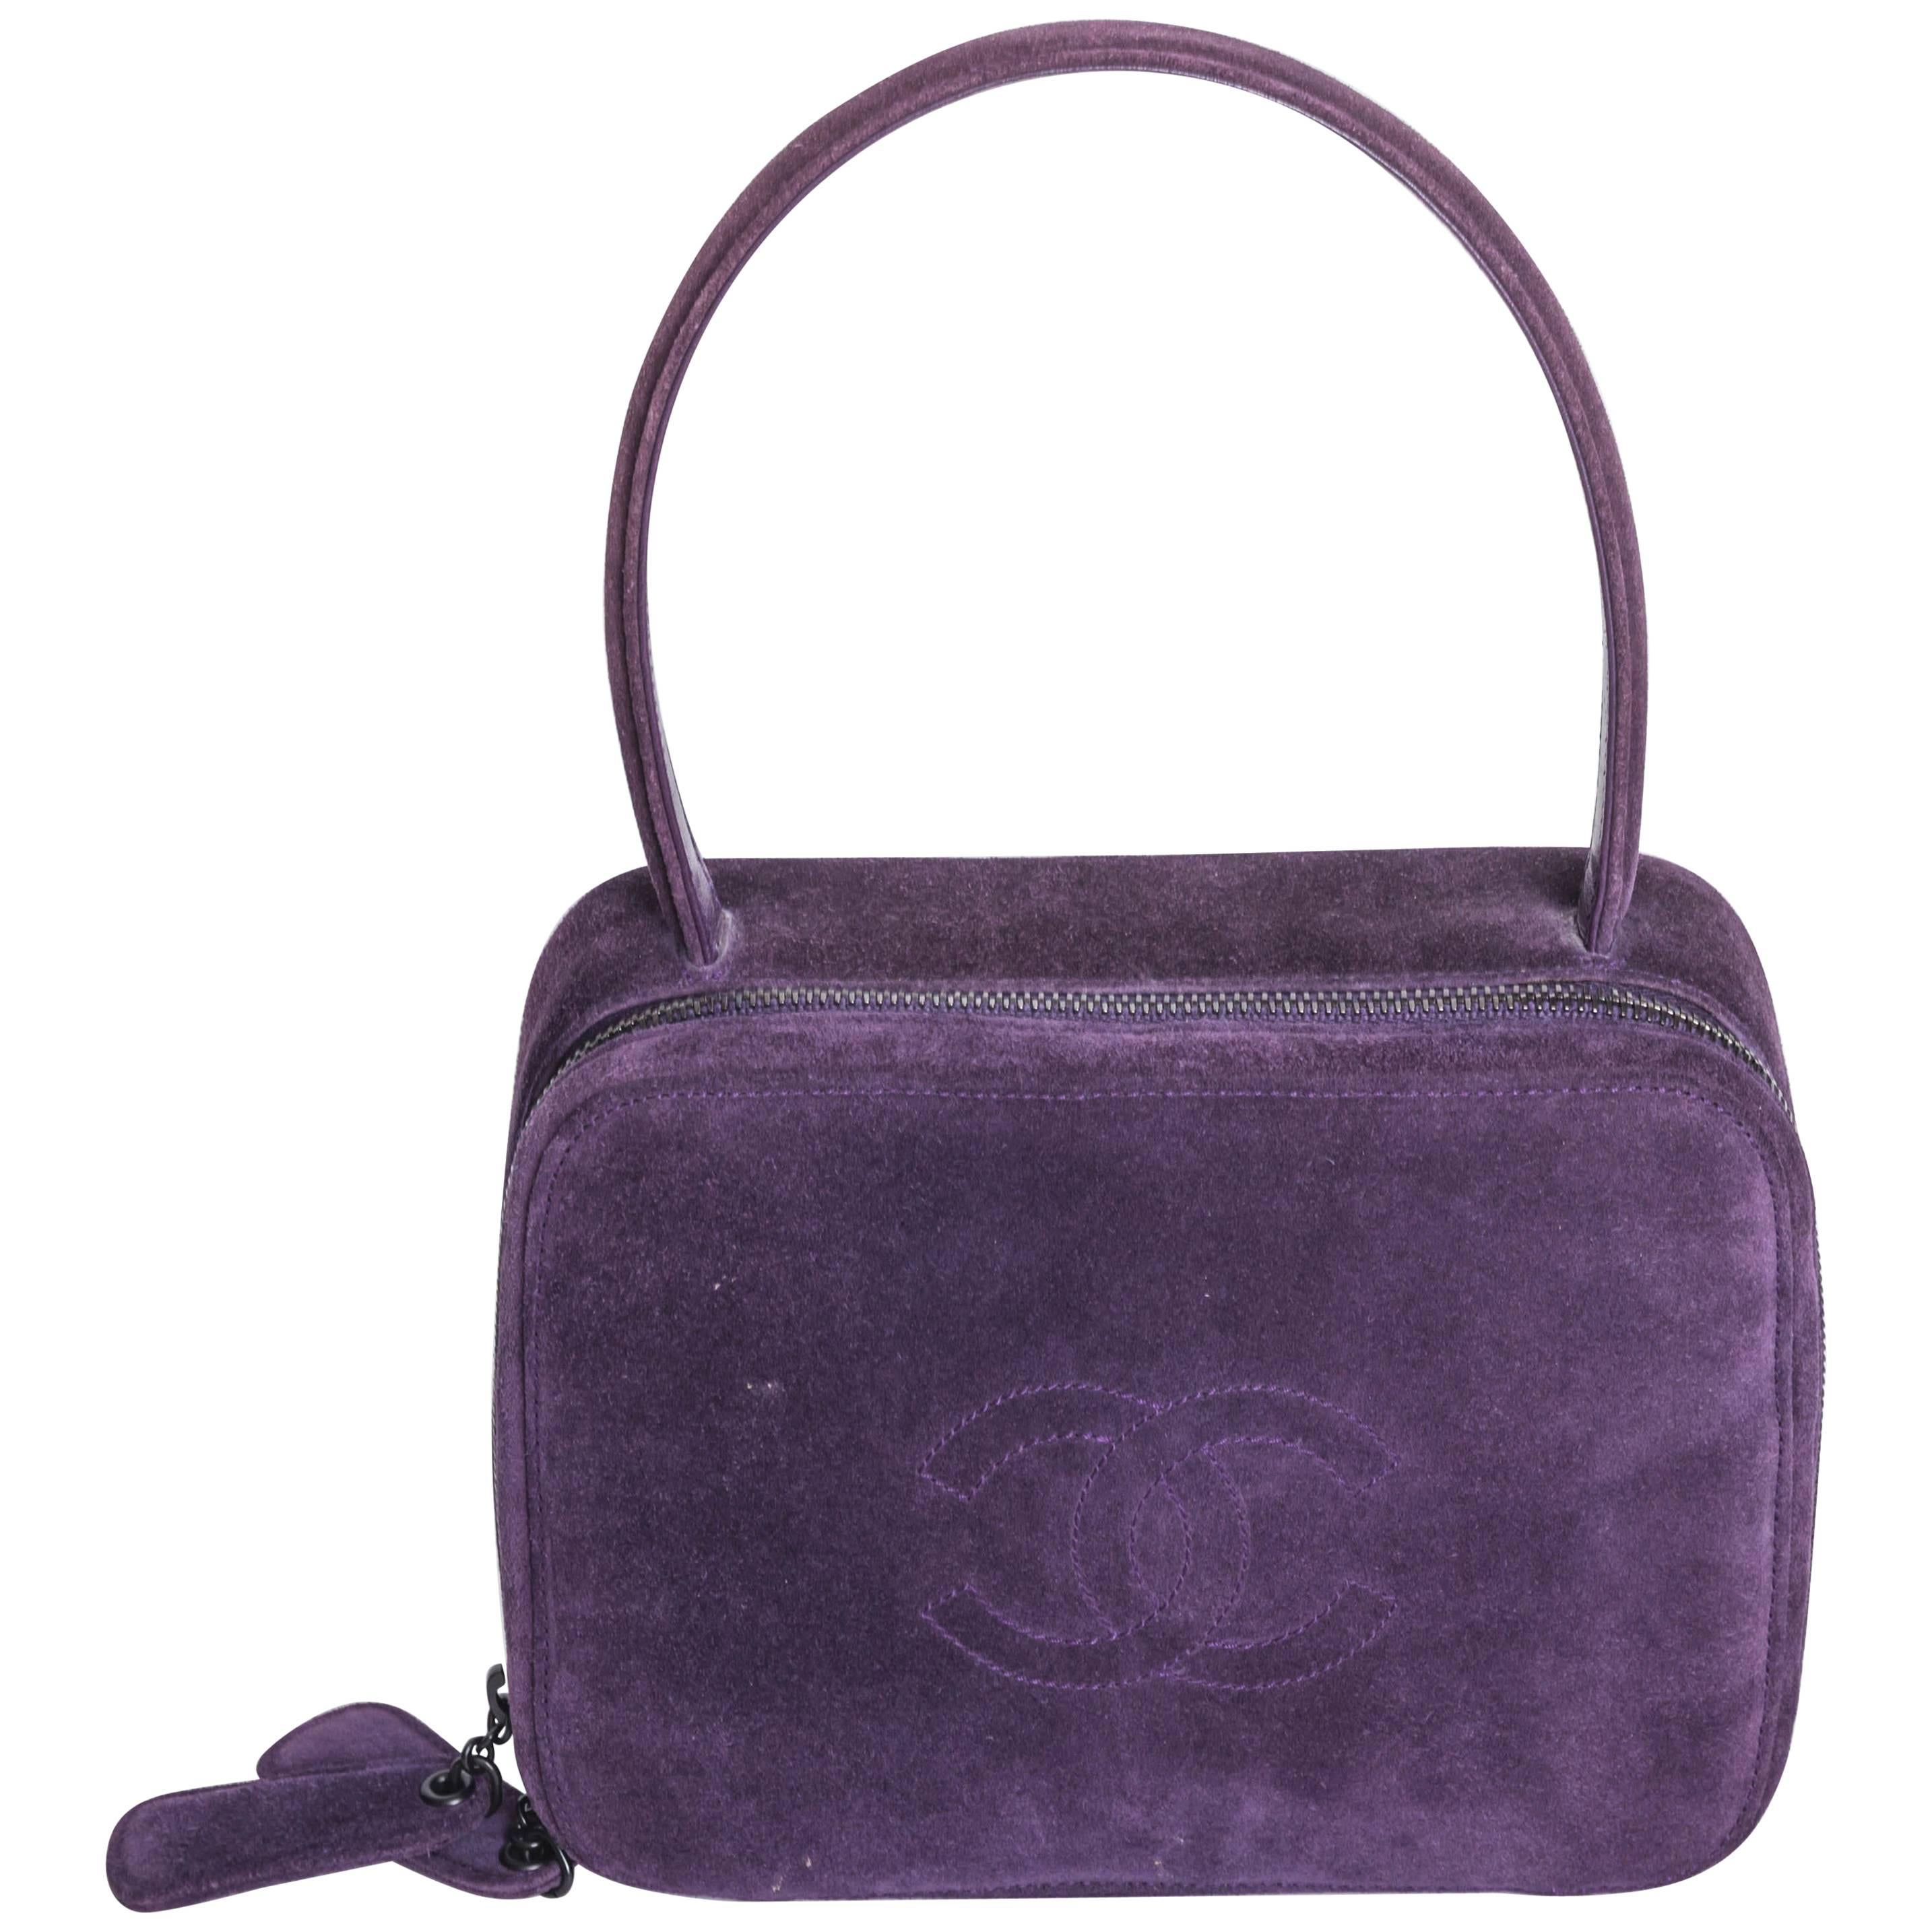 Vintage Purple Suede Chanel Bag - 1997 - 1999